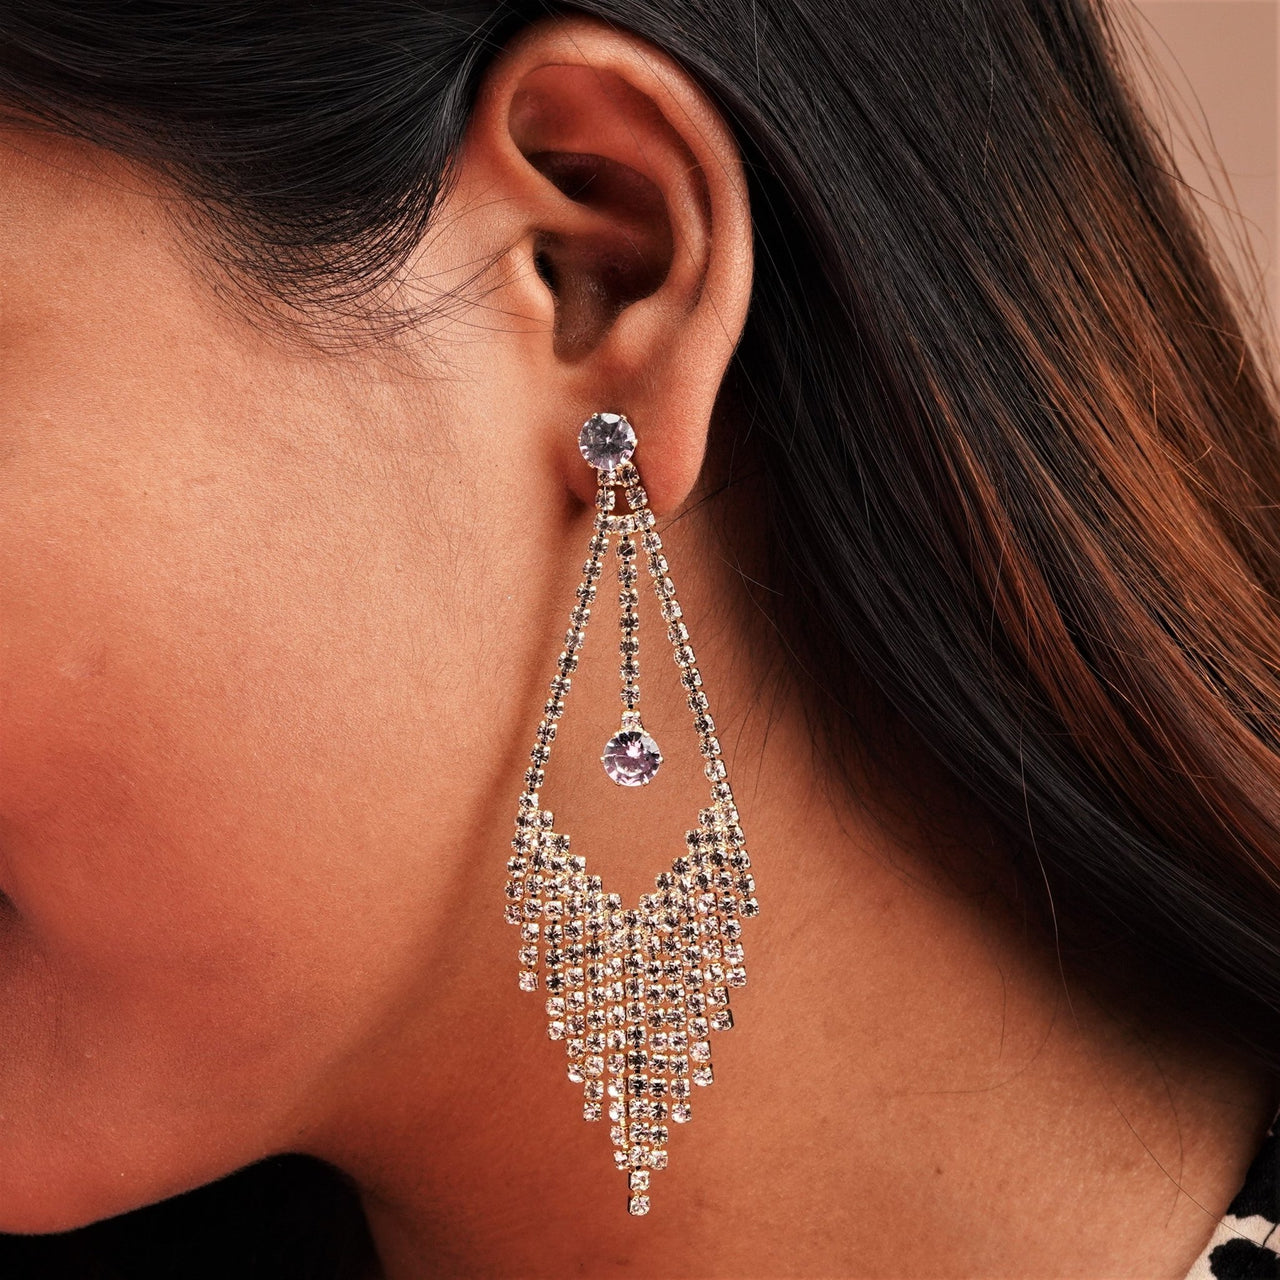 Stone cut stylish design earrings on a girls ear